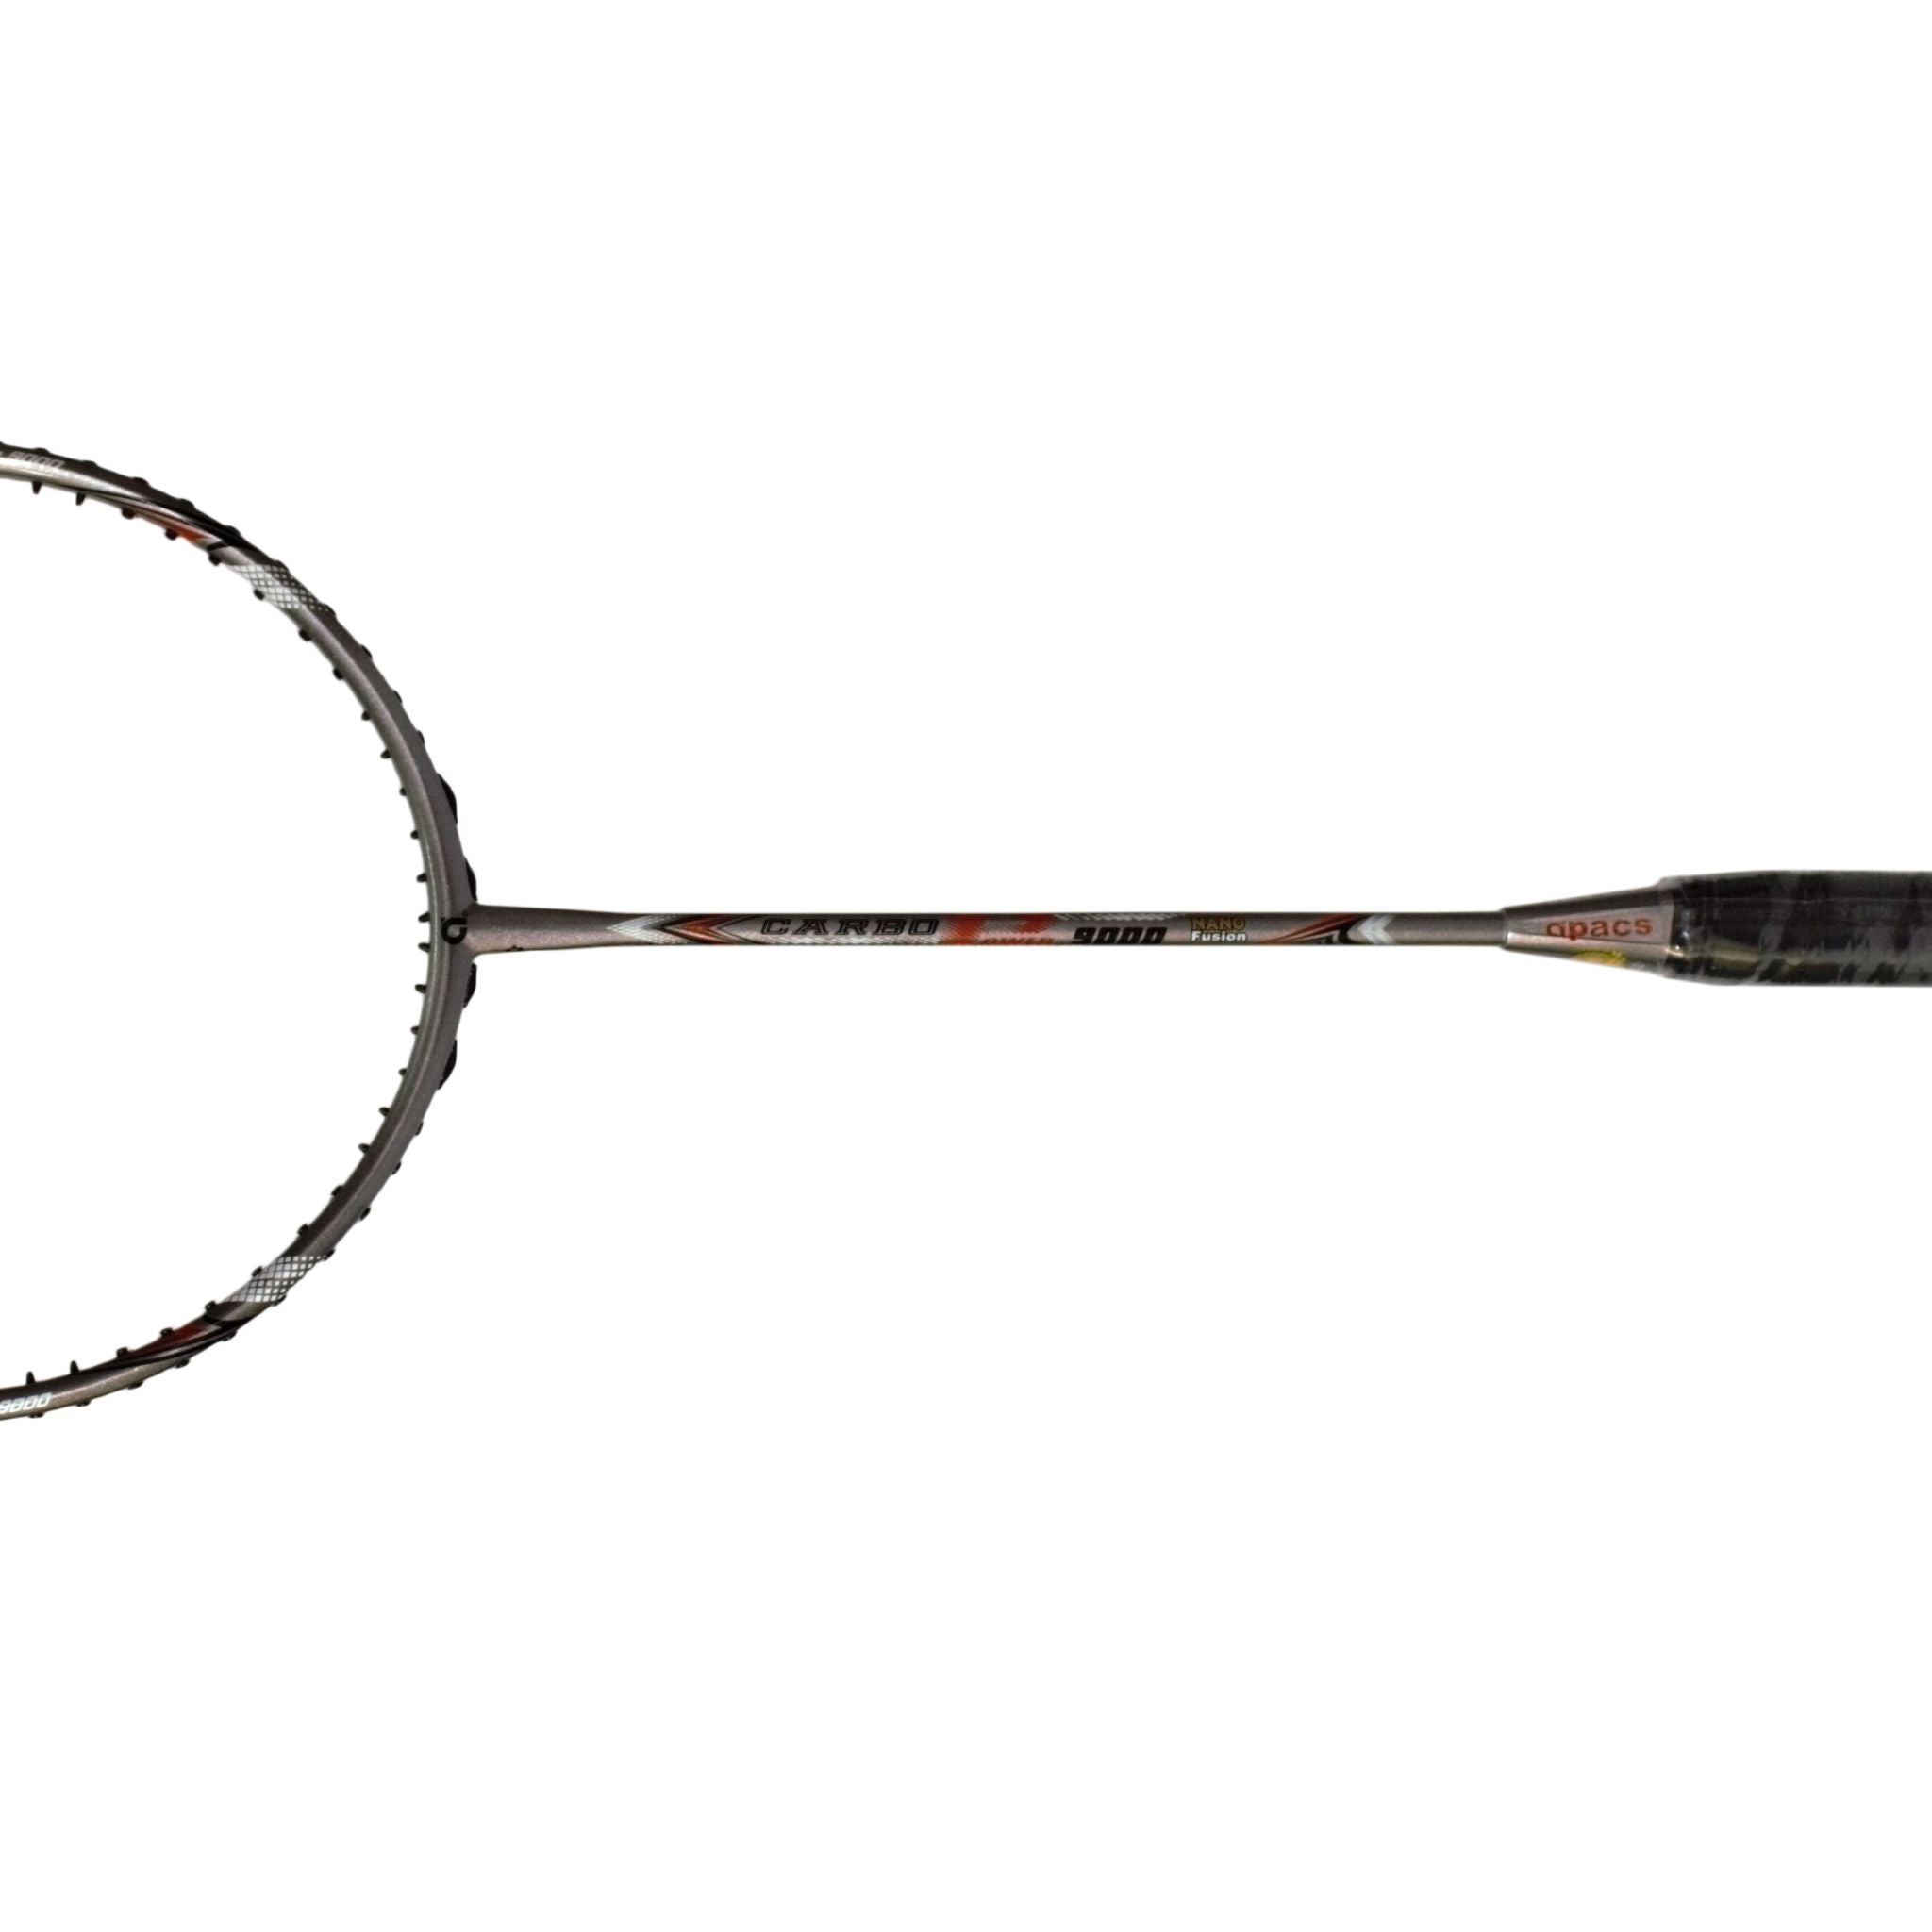 APACS Carbo 9000 Badminton Racket